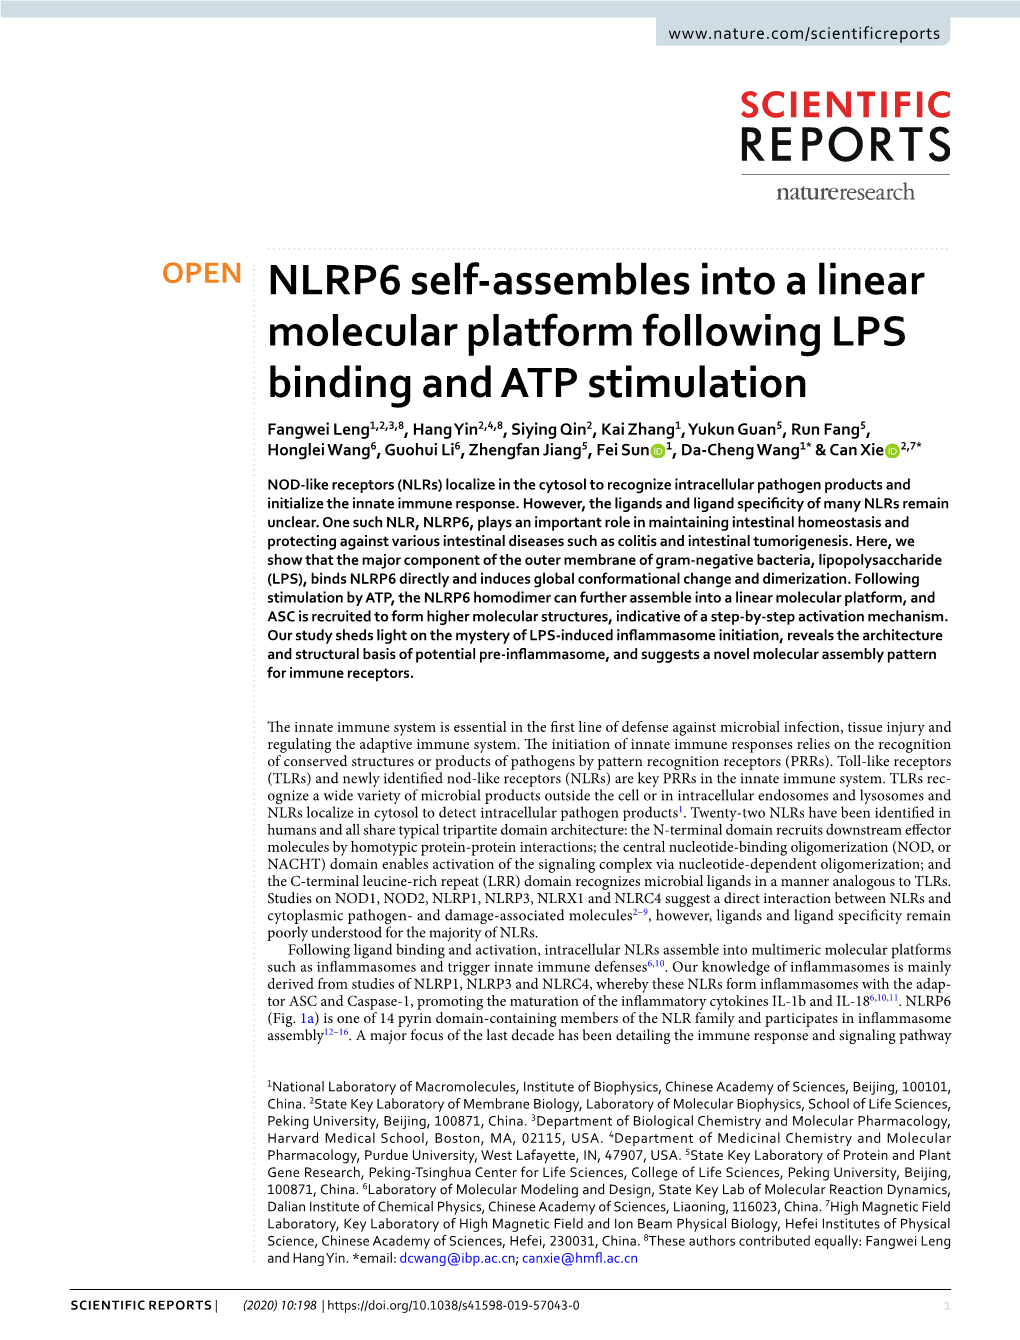 NLRP6 Self-Assembles Into a Linear Molecular Platform Following LPS